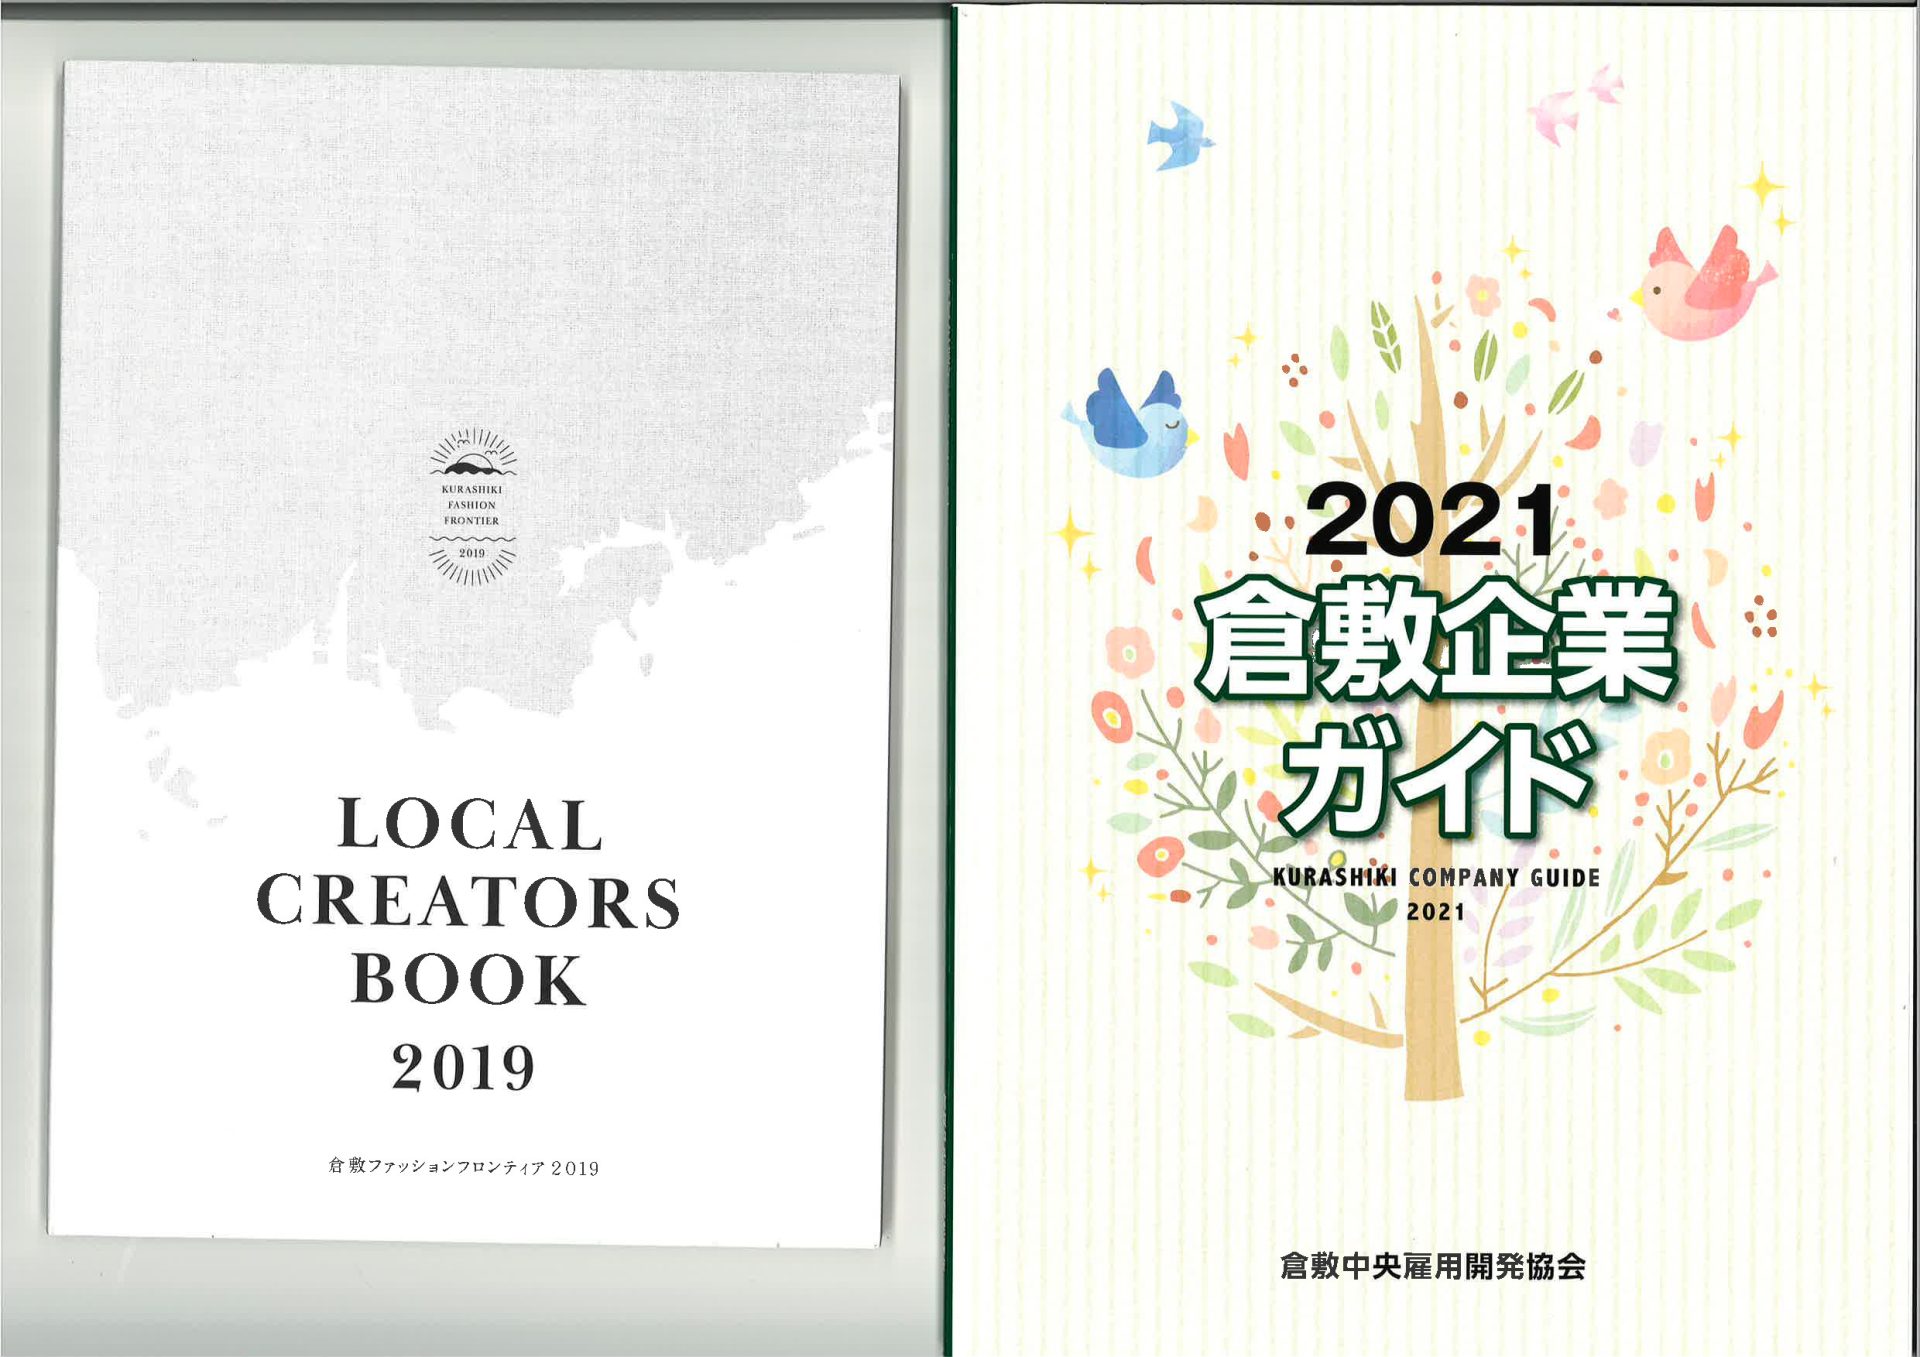 【倉敷市】倉敷企業ガイド2021・LOCAL CREATORS BOOK 2019 | 地域のトピックス